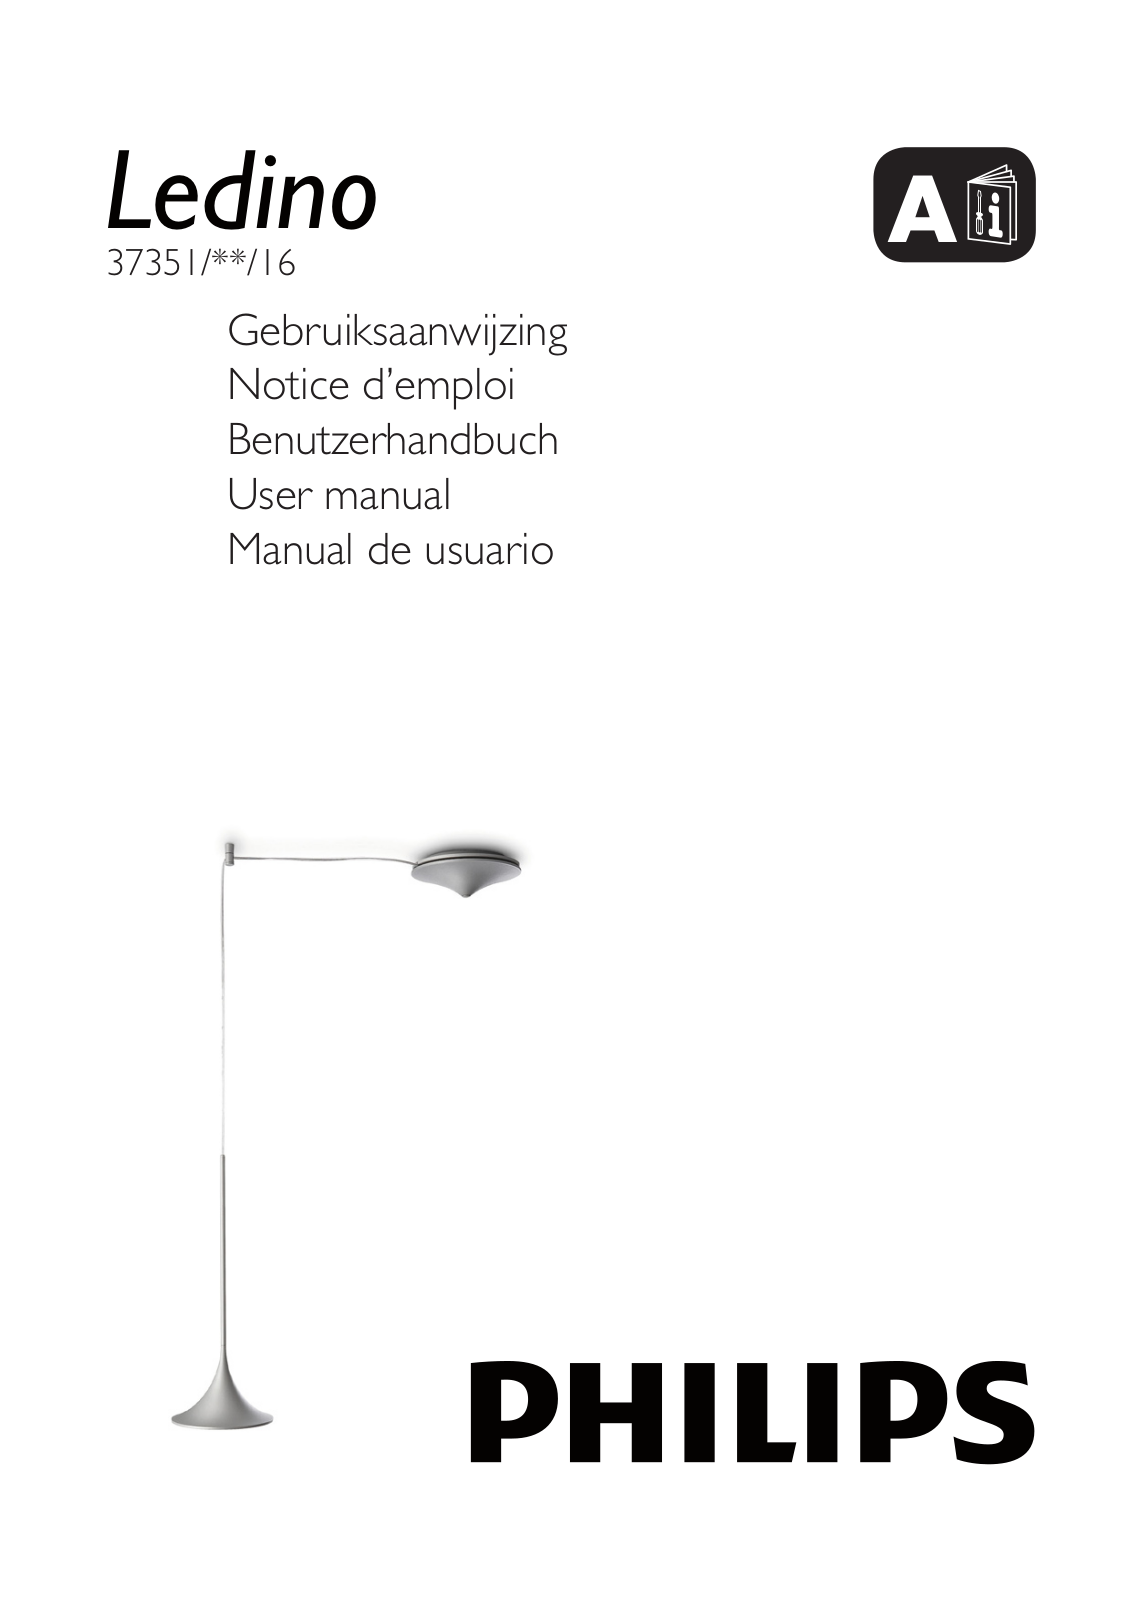 Philips Ledino Pendelleuchte User Manual